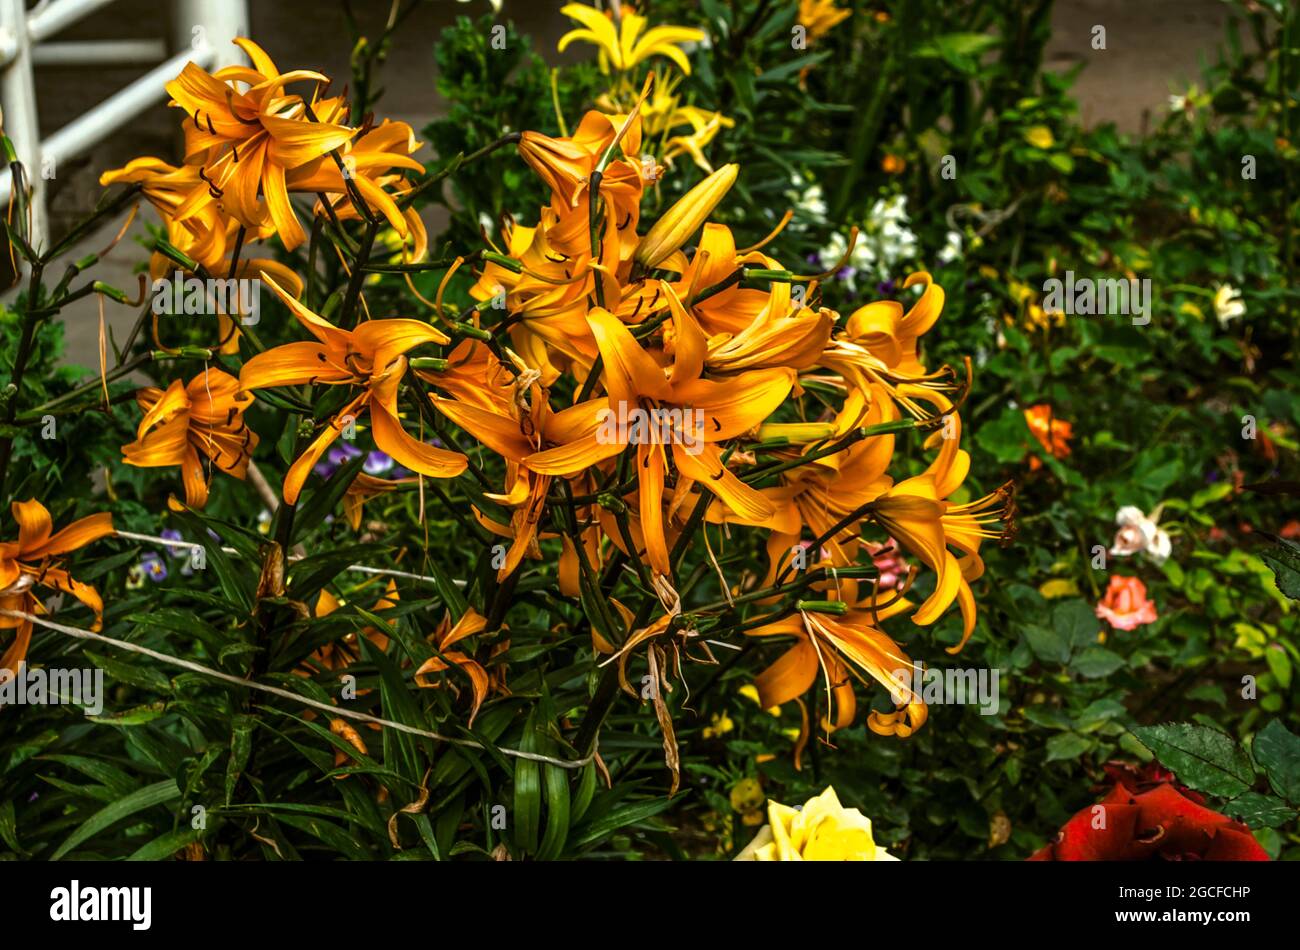 Ein großer Strauß großer oranger Lilien, mit einem Seil an den Zaun auf einem Blumenbeet im Garten gebunden, zwischen Büschen blühender Rosen Stockfoto